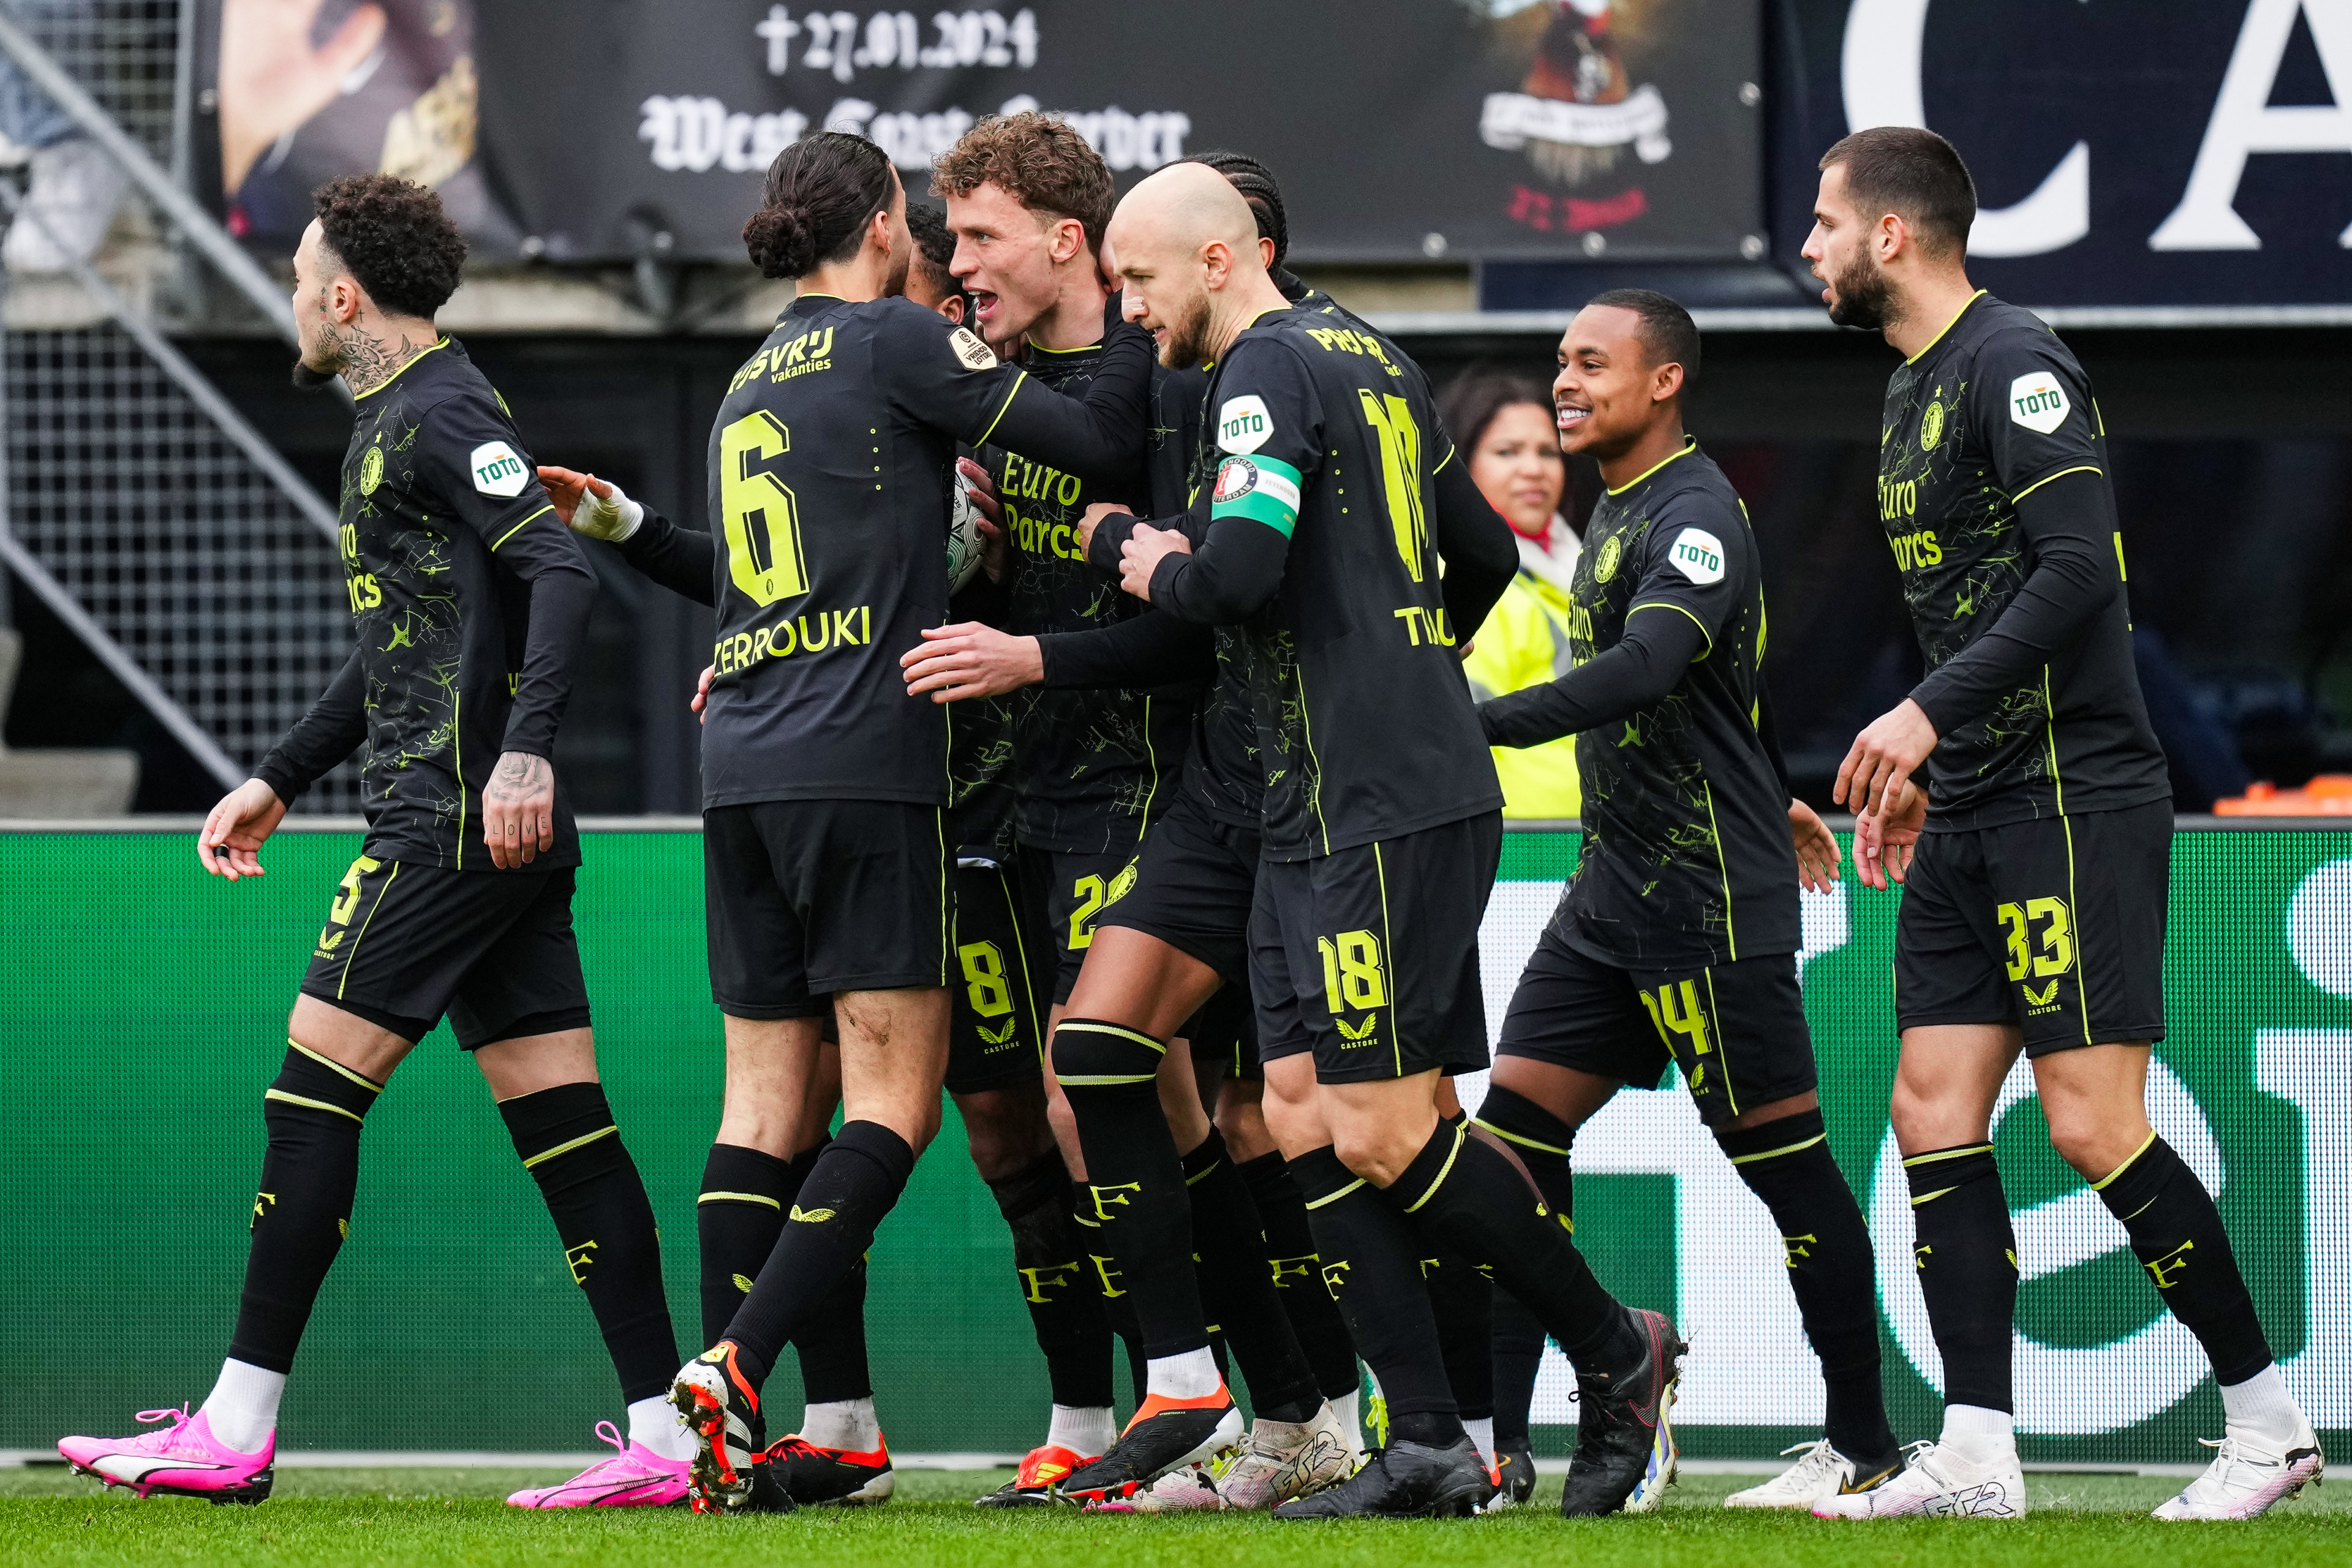 Beoordeel de spelers voor de wedstrijd AZ - Feyenoord (0-1)